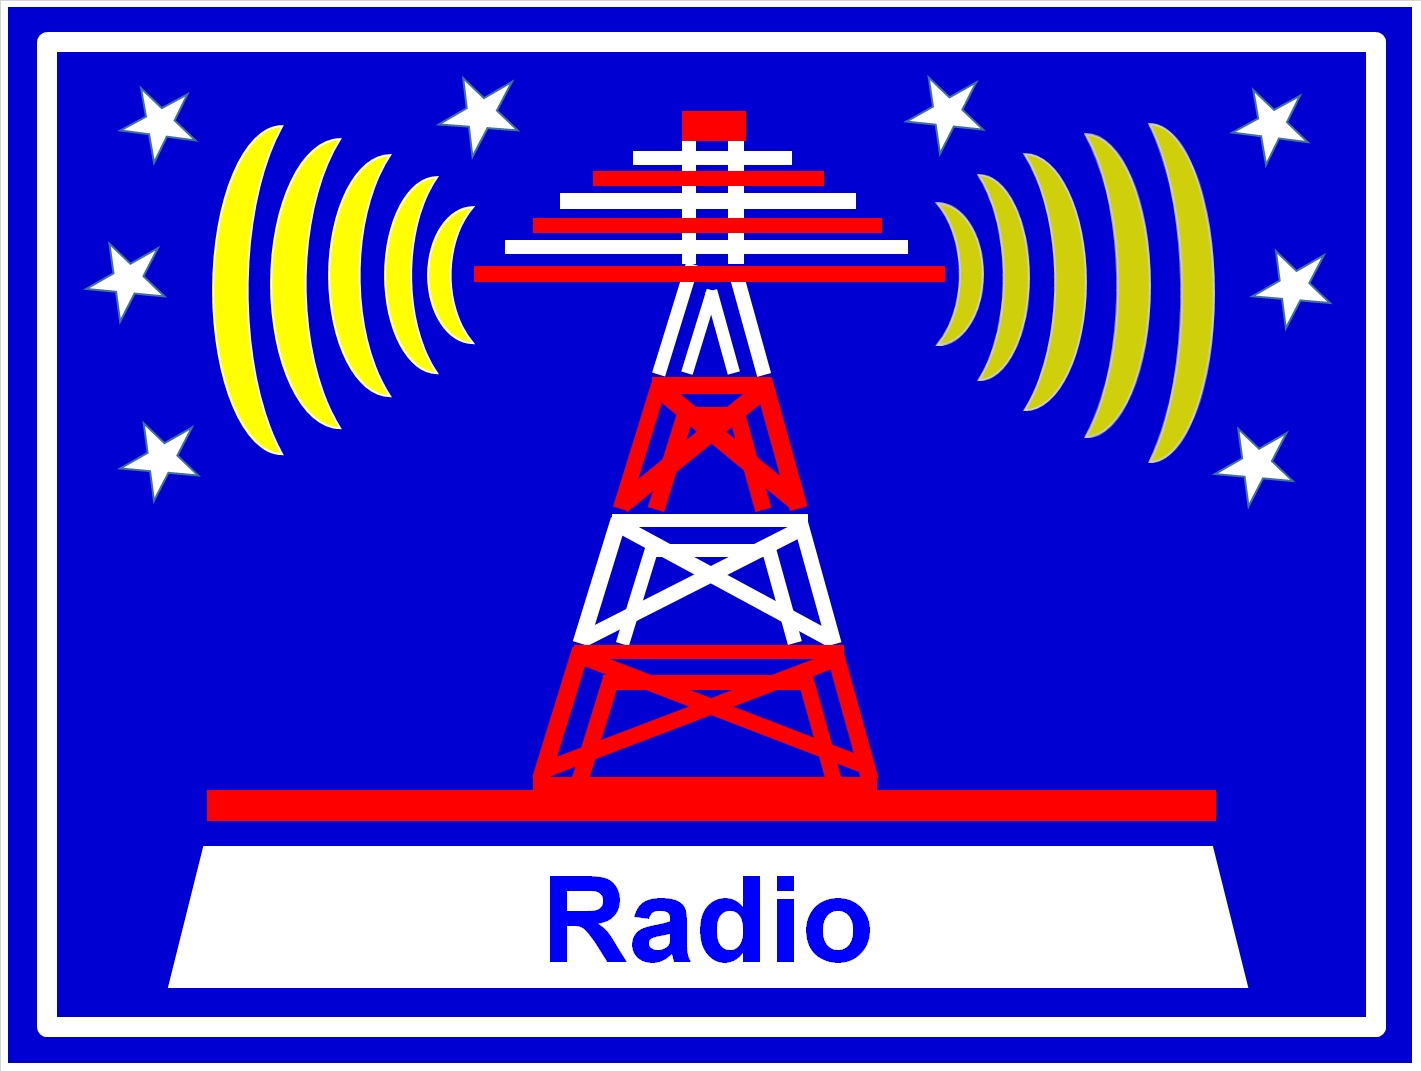 Informationen über das Medium Radio zum Thema 100 Jahre Rundfunk